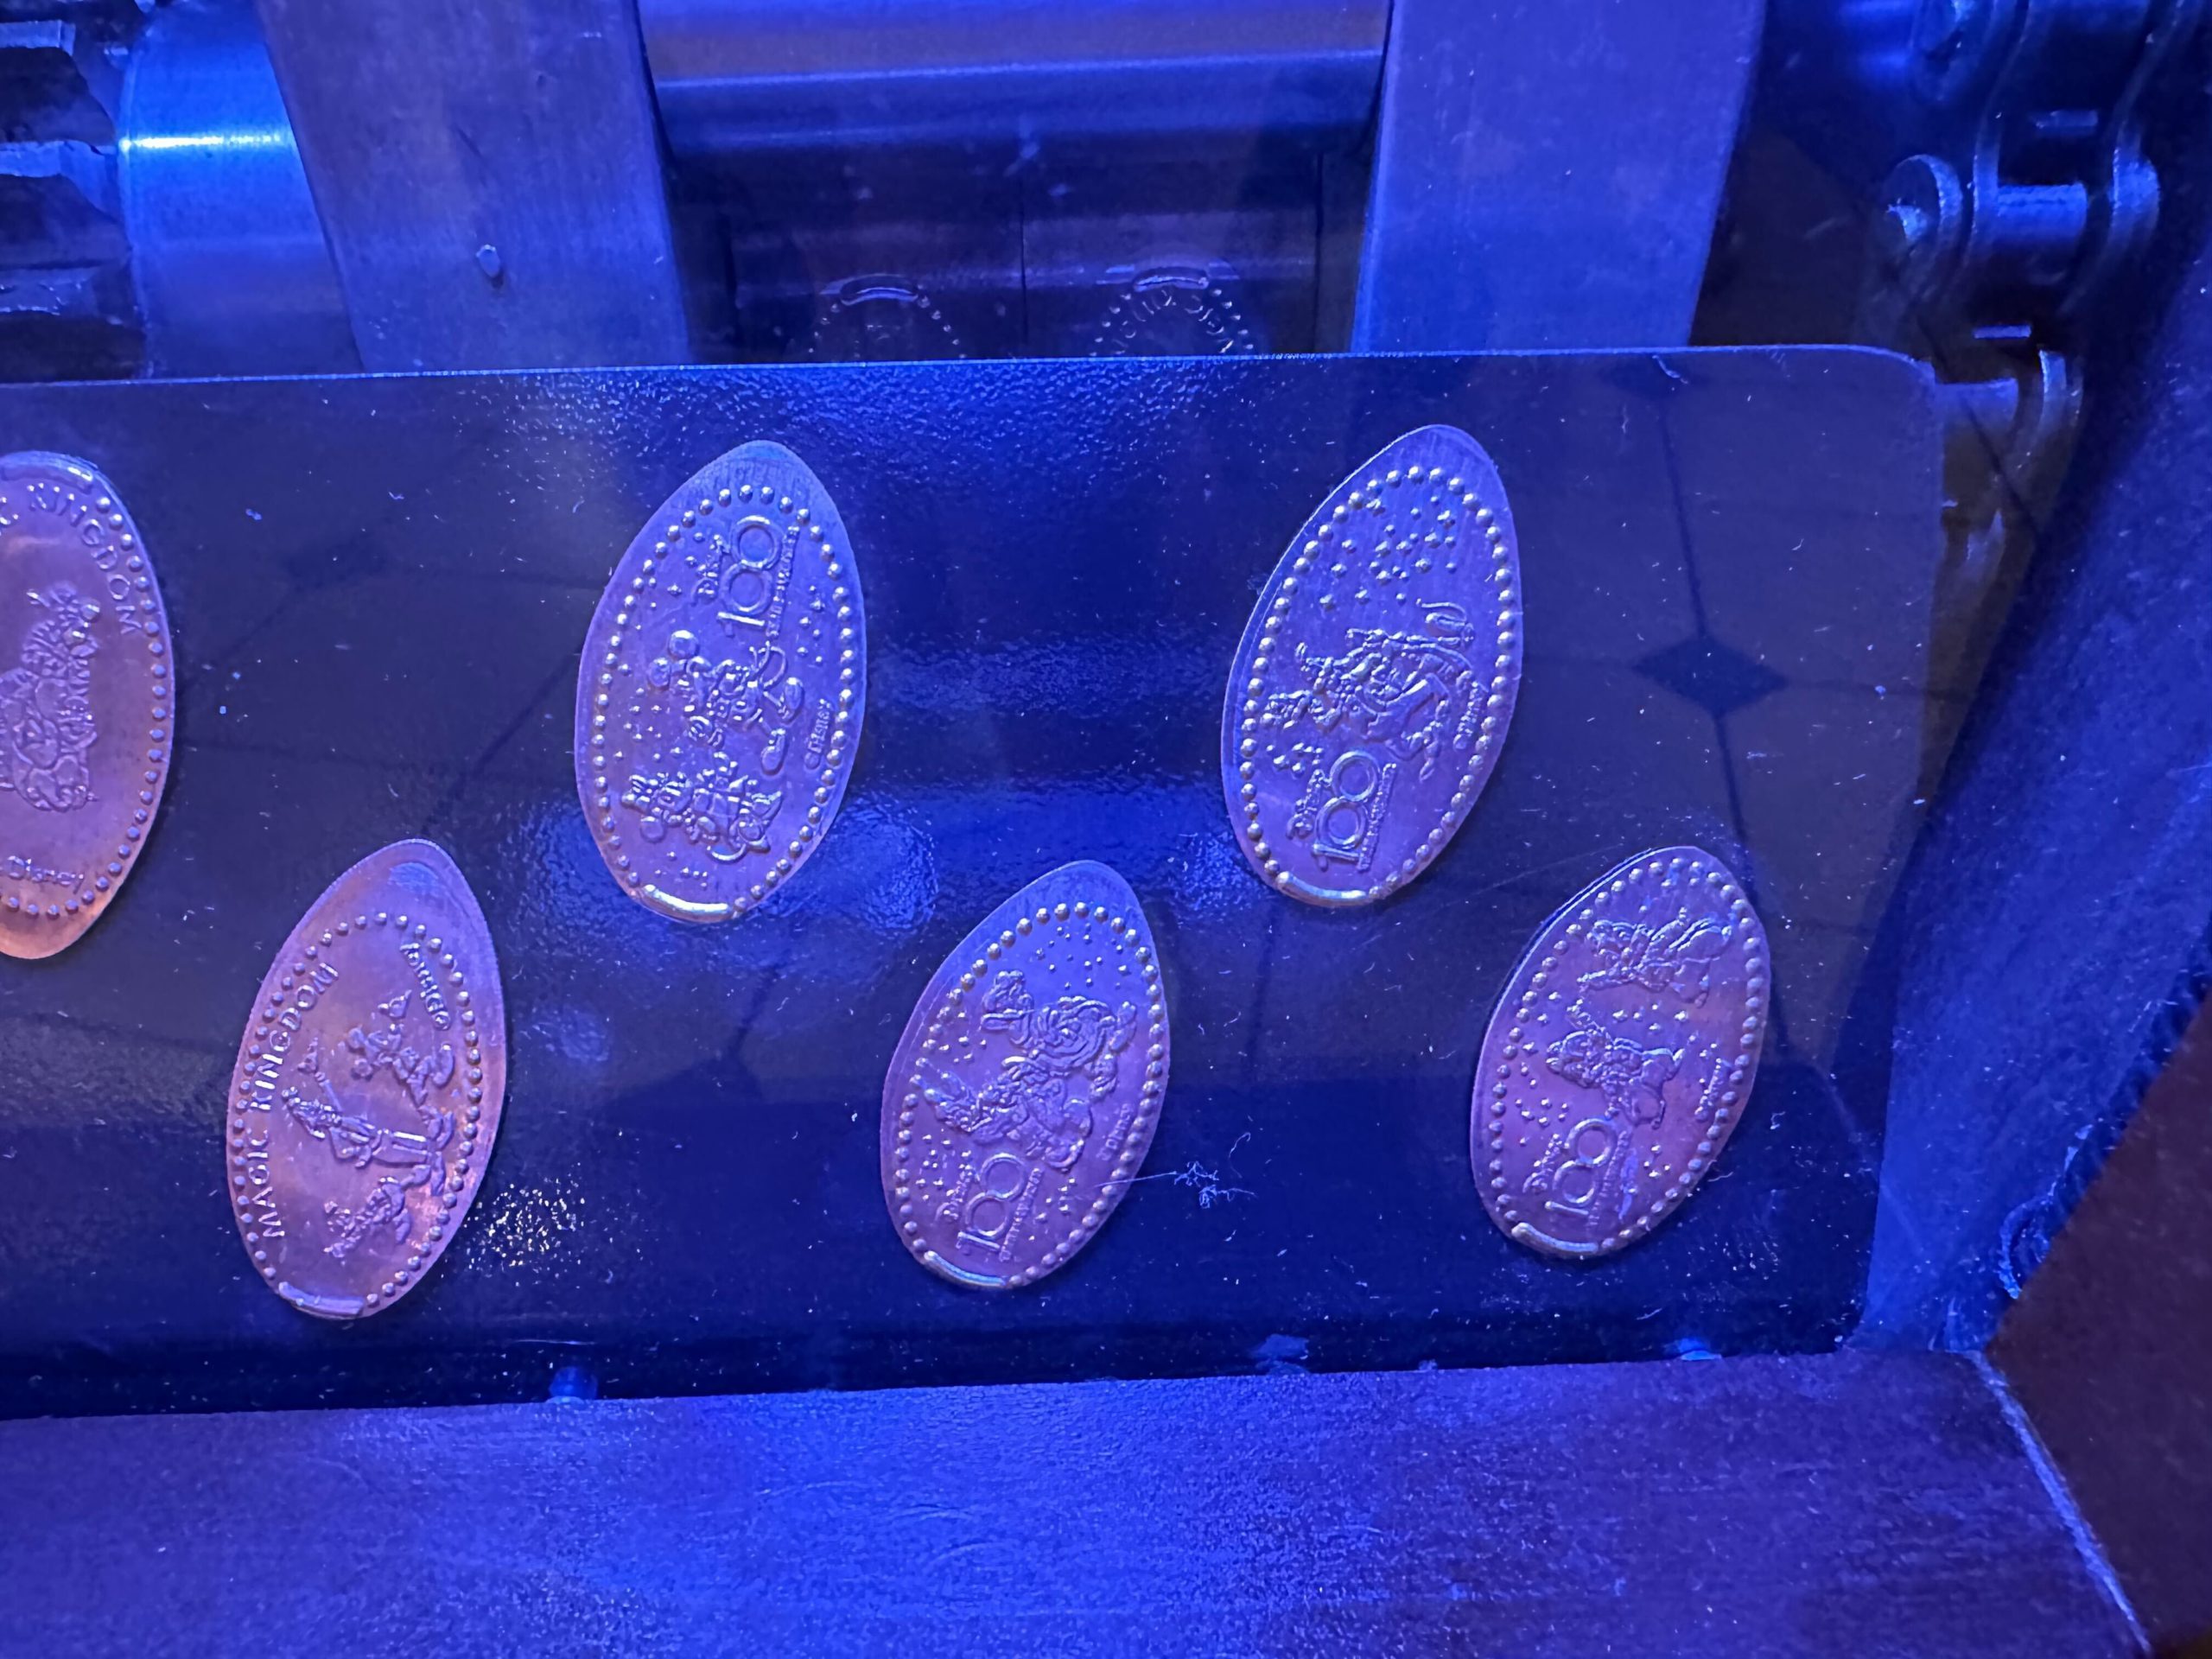 disney100 pressed pennies 